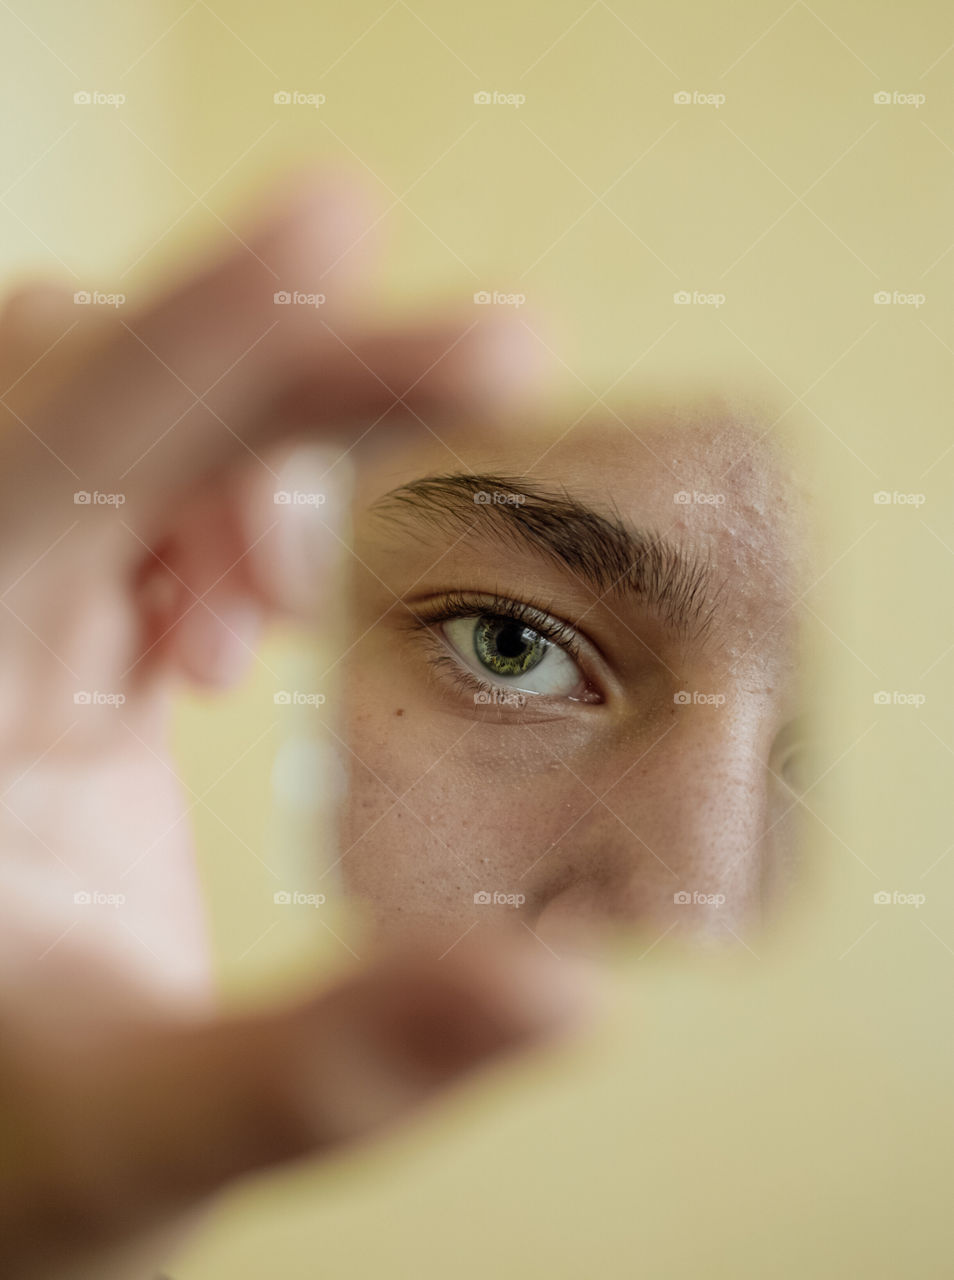 Close-up eye looking into broken mirror